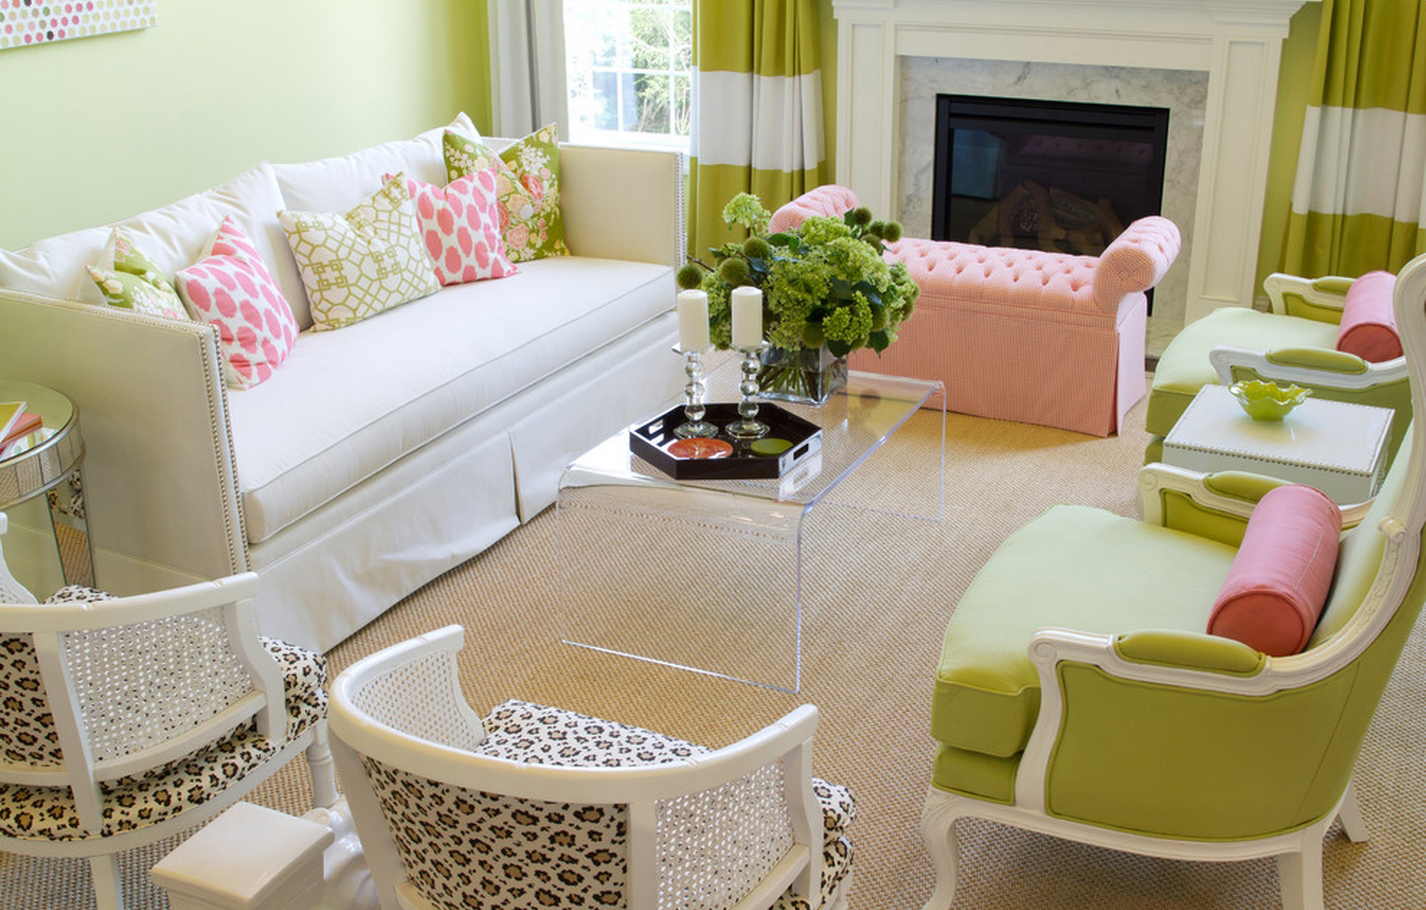 Ροζ, ανοιχτό πράσινο, λευκό και μπεζ χρώμα στο σαλόνι